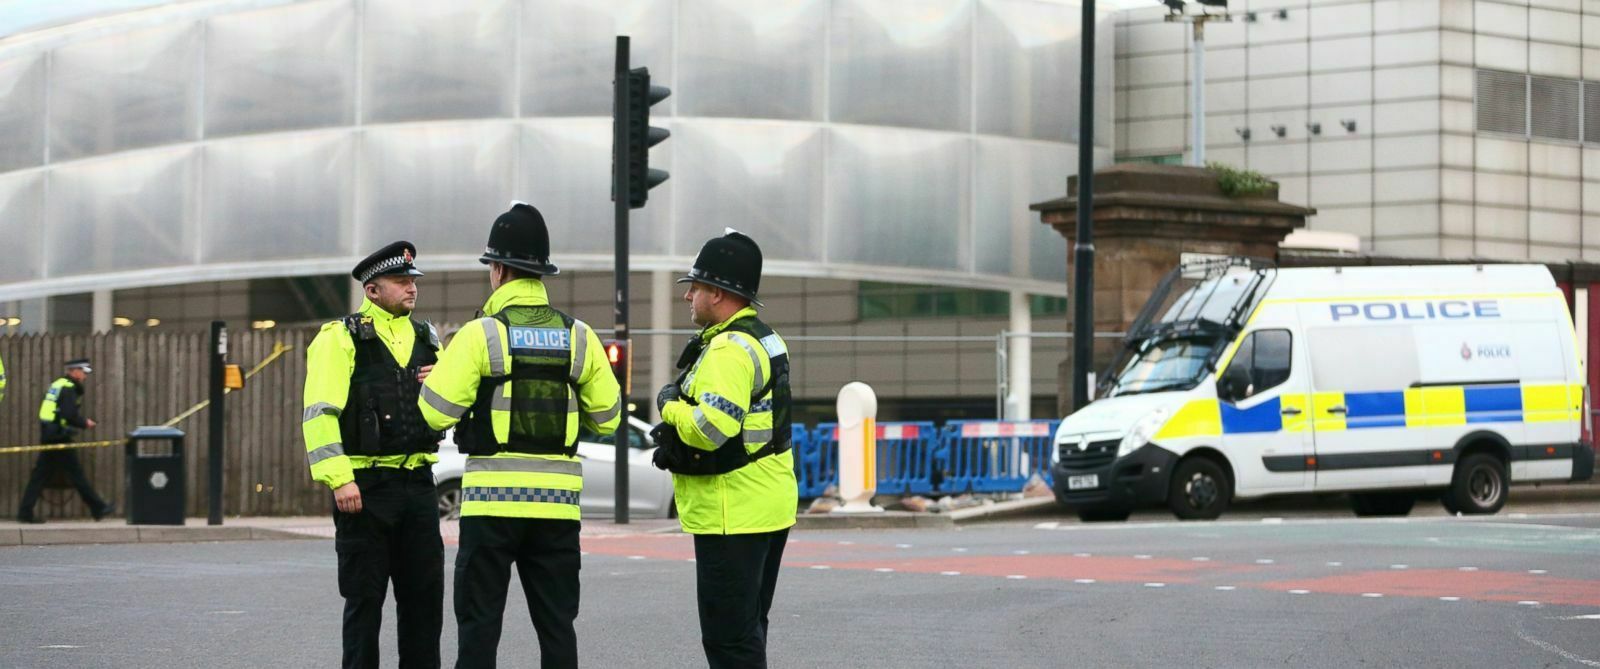 Уровень террористической угрозы в Великобритании повышен до критического